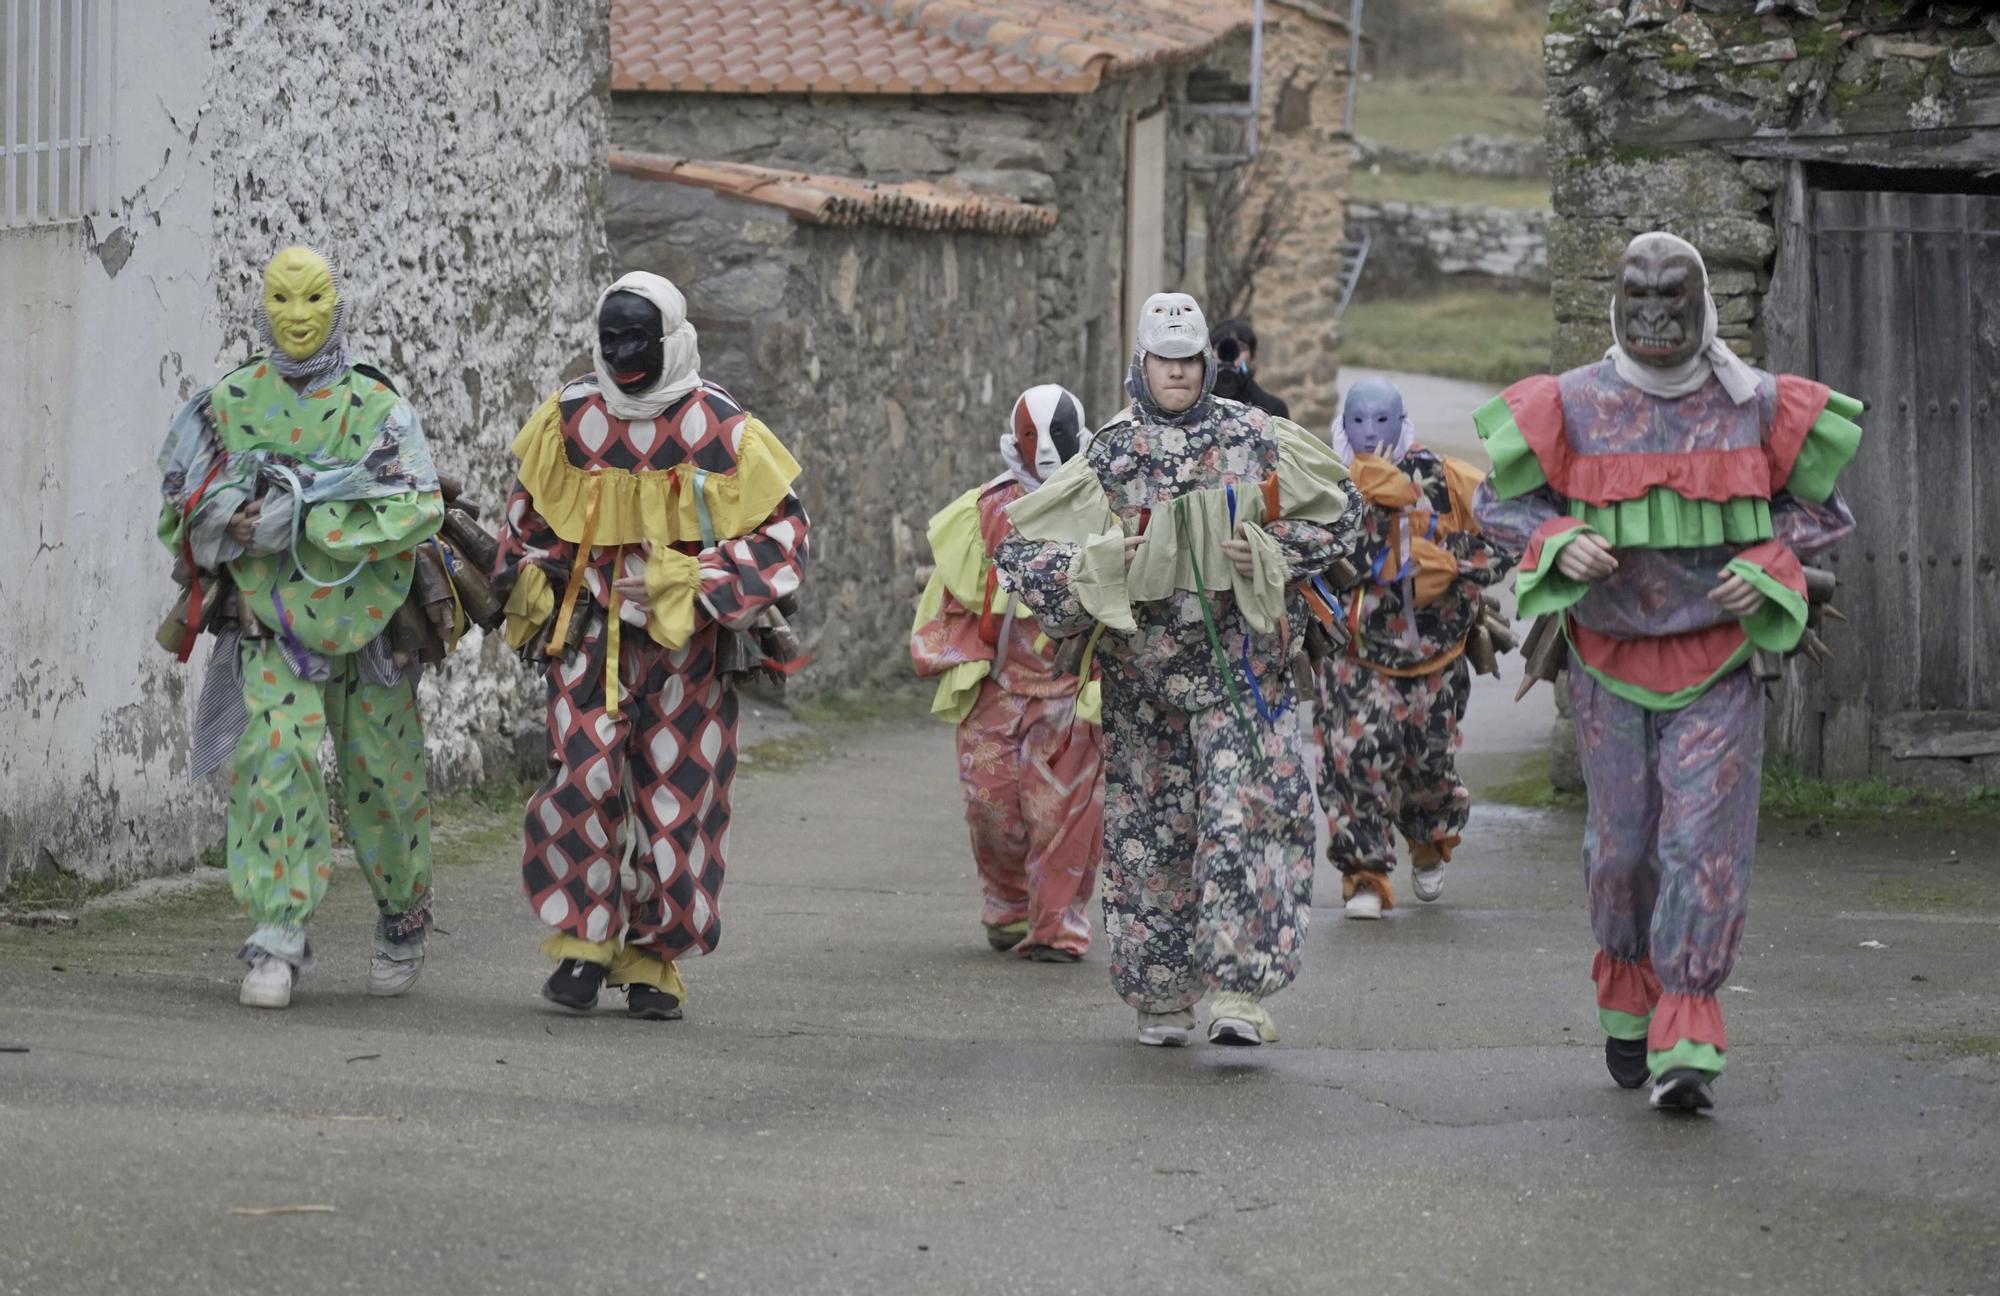 GALERIA | Martes de Carnaval en Villanueva de Valrojo